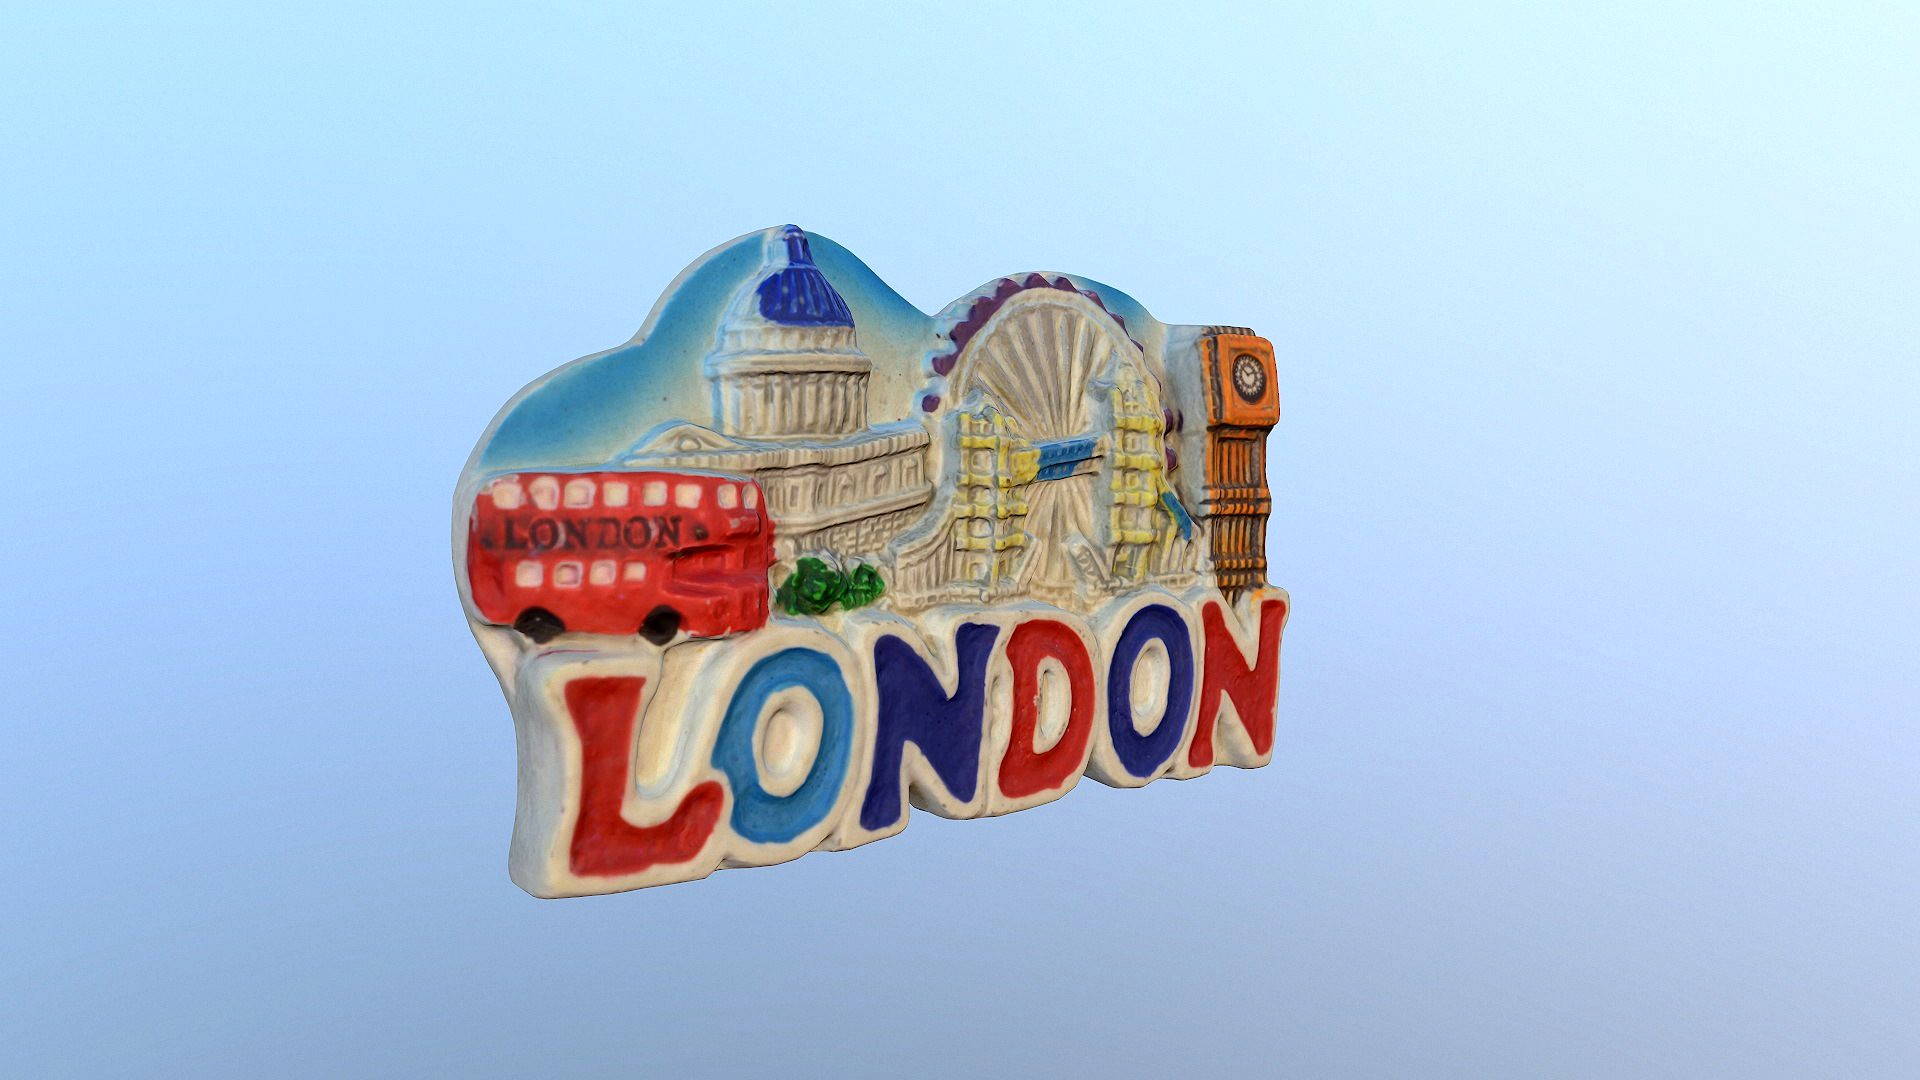 City London England magnet souvenir